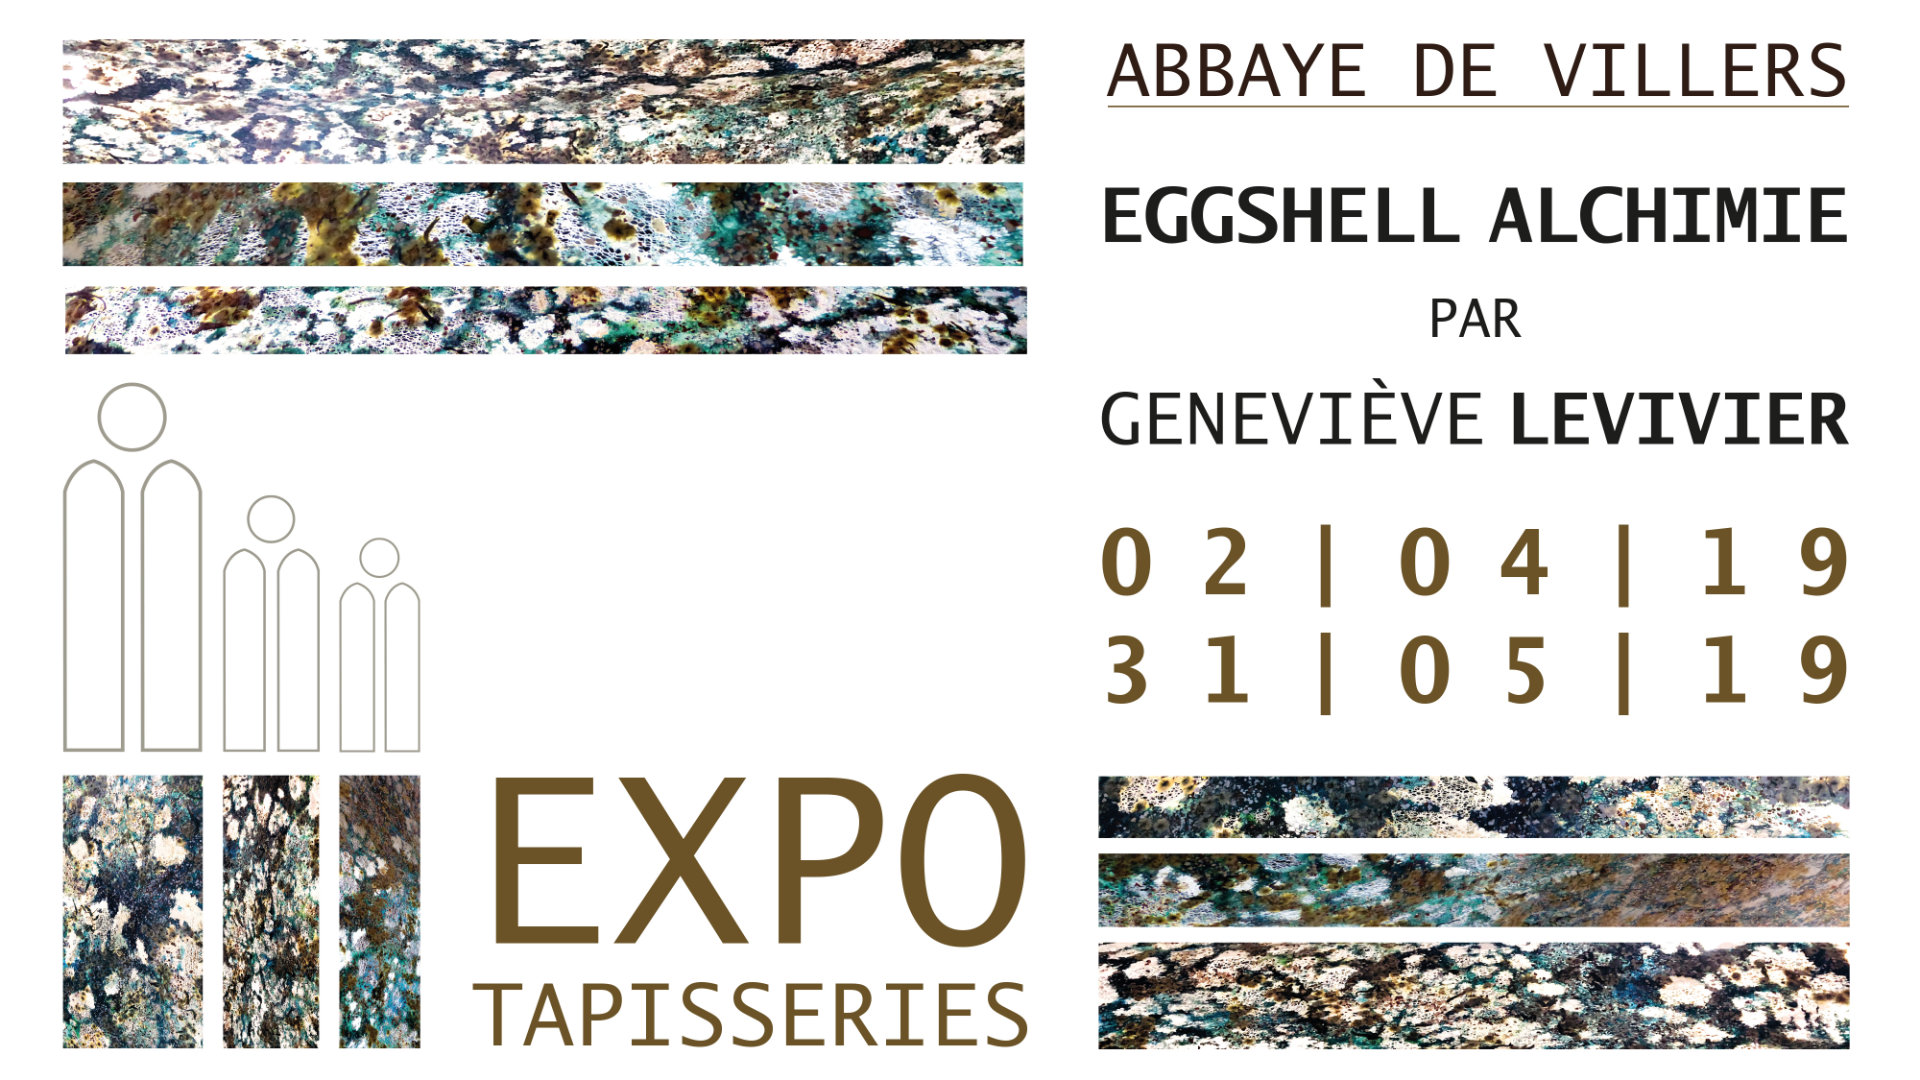 Eggshell Alchimie - Expo de tapisseries contemporaines de Geneviève Levivier